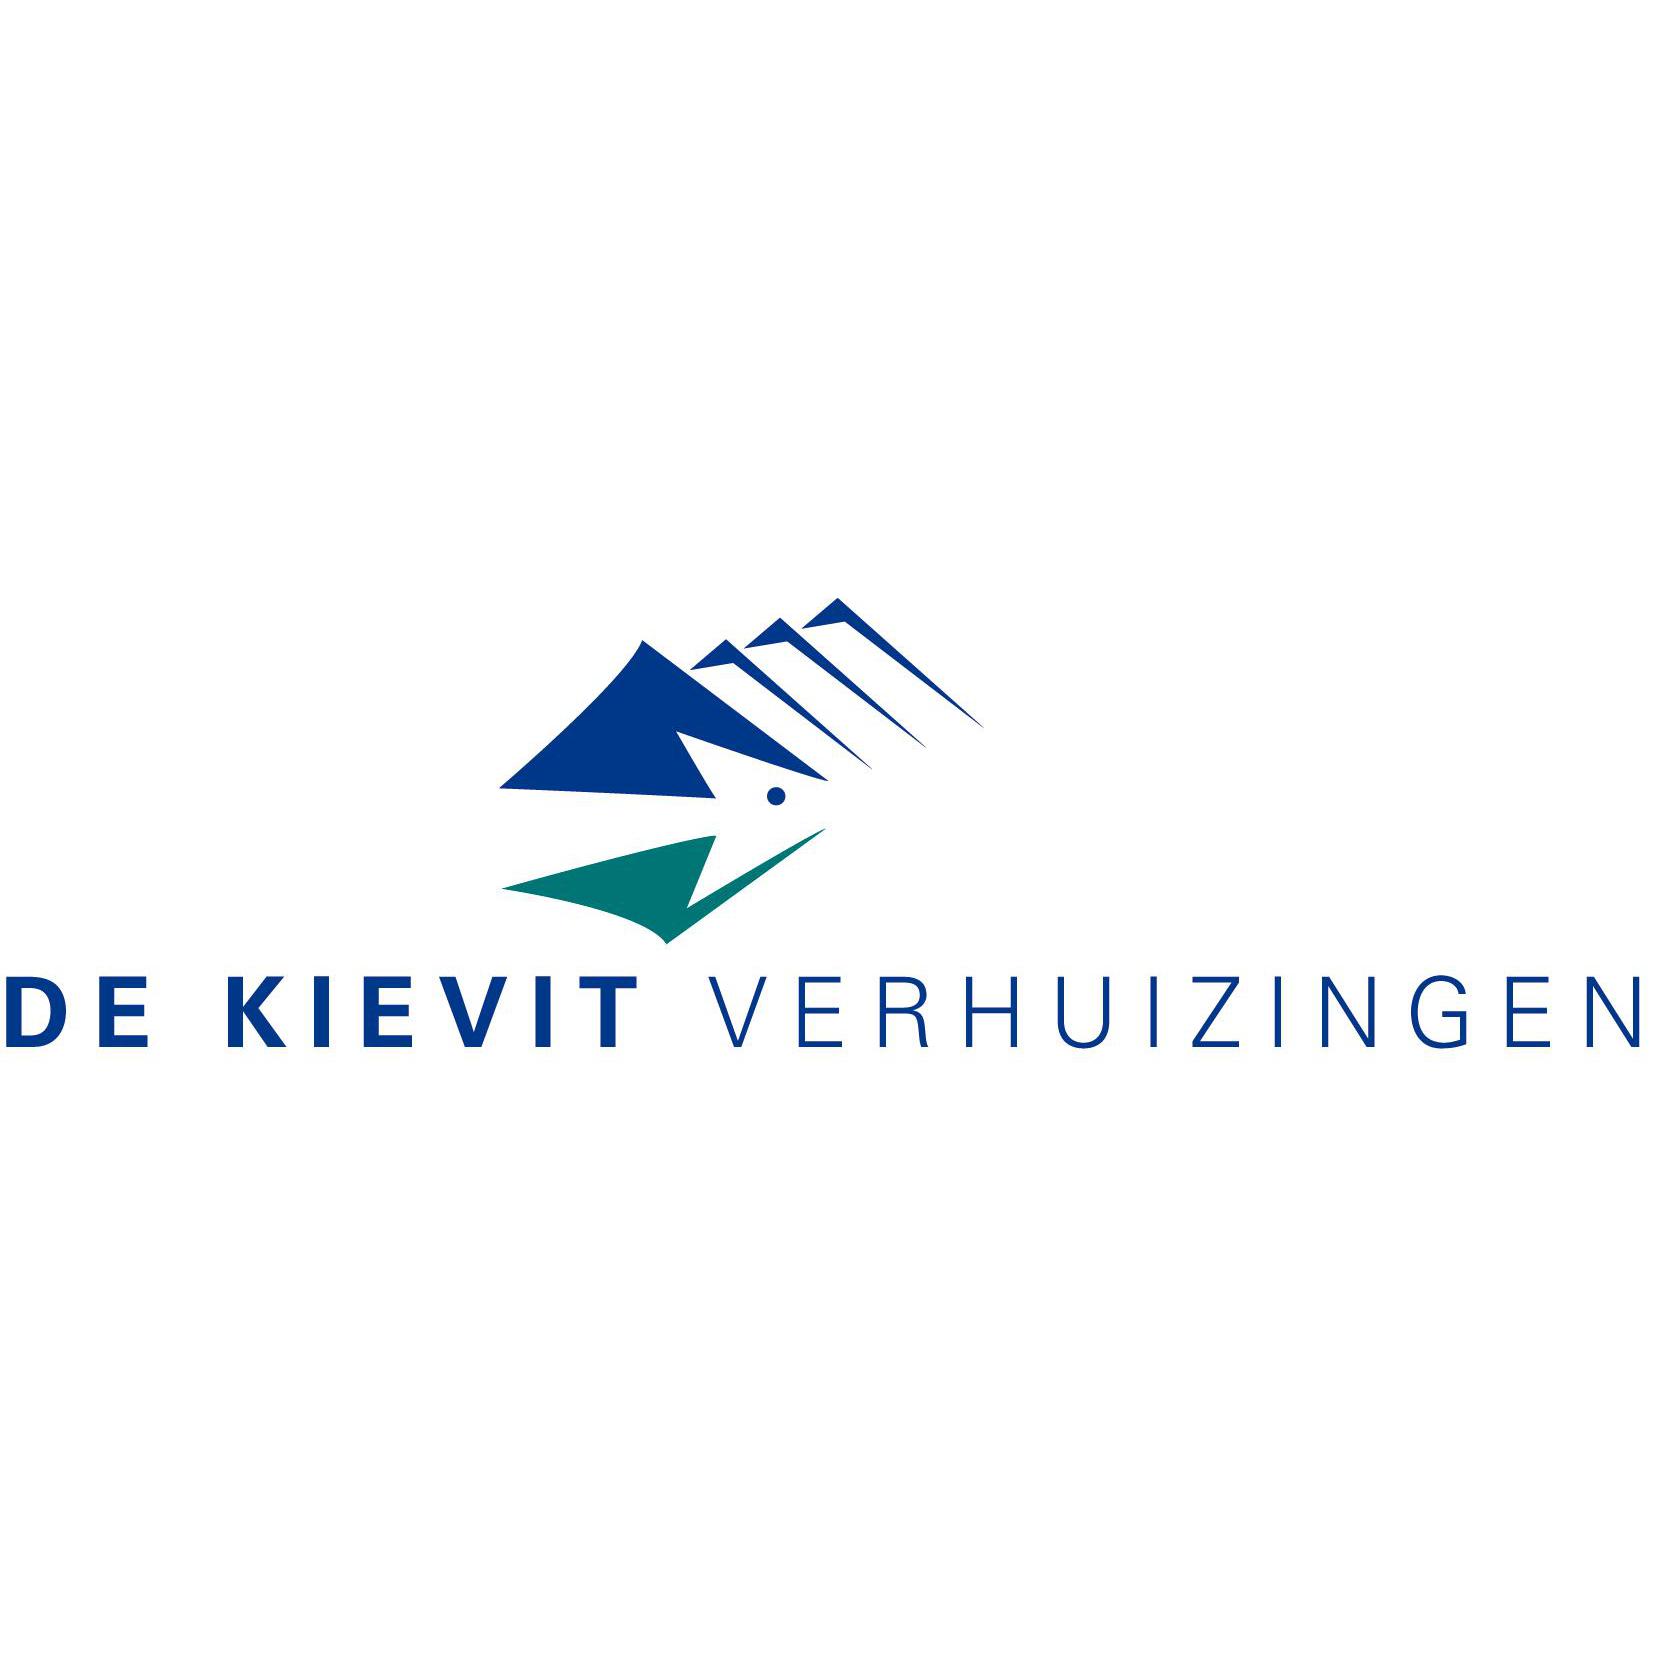 De Kievit verhuizingen Logo